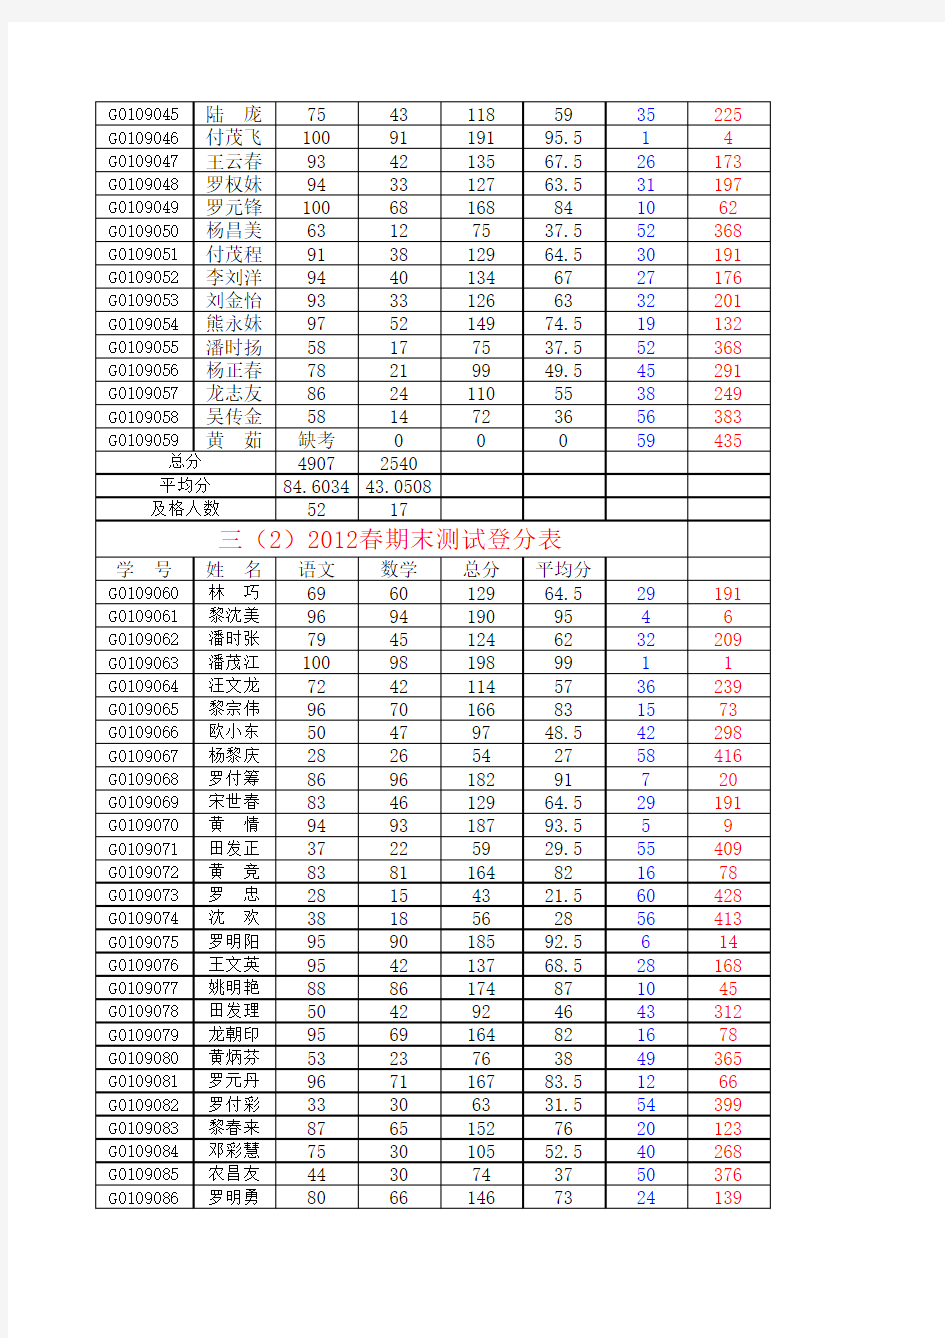 2012年春期末成绩登记表